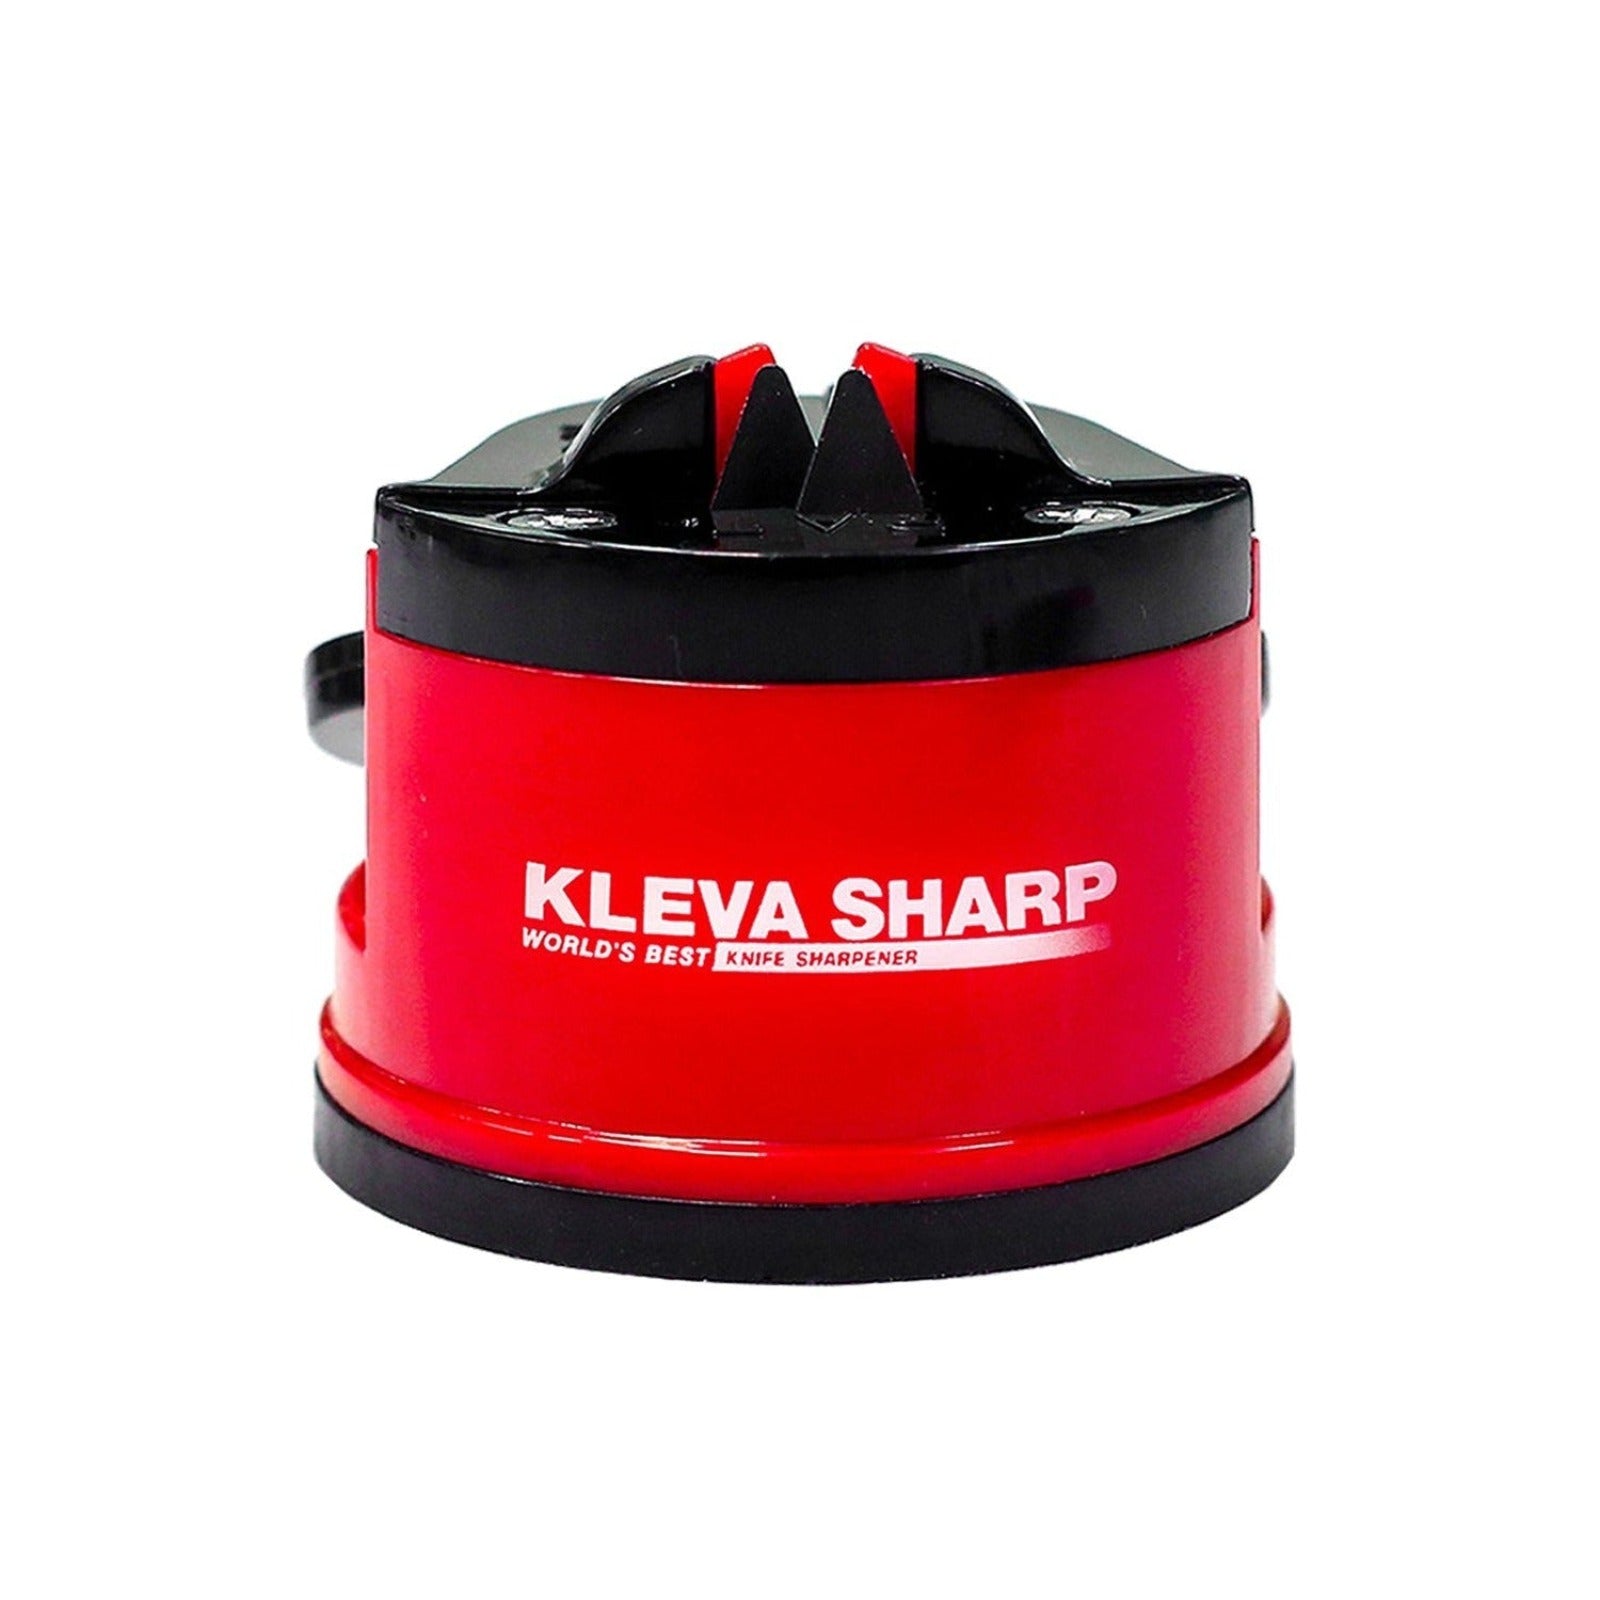 Kleva®Kleva Sharp® The Original World's Best Knife Sharpener!  Bunnings Marketplace   